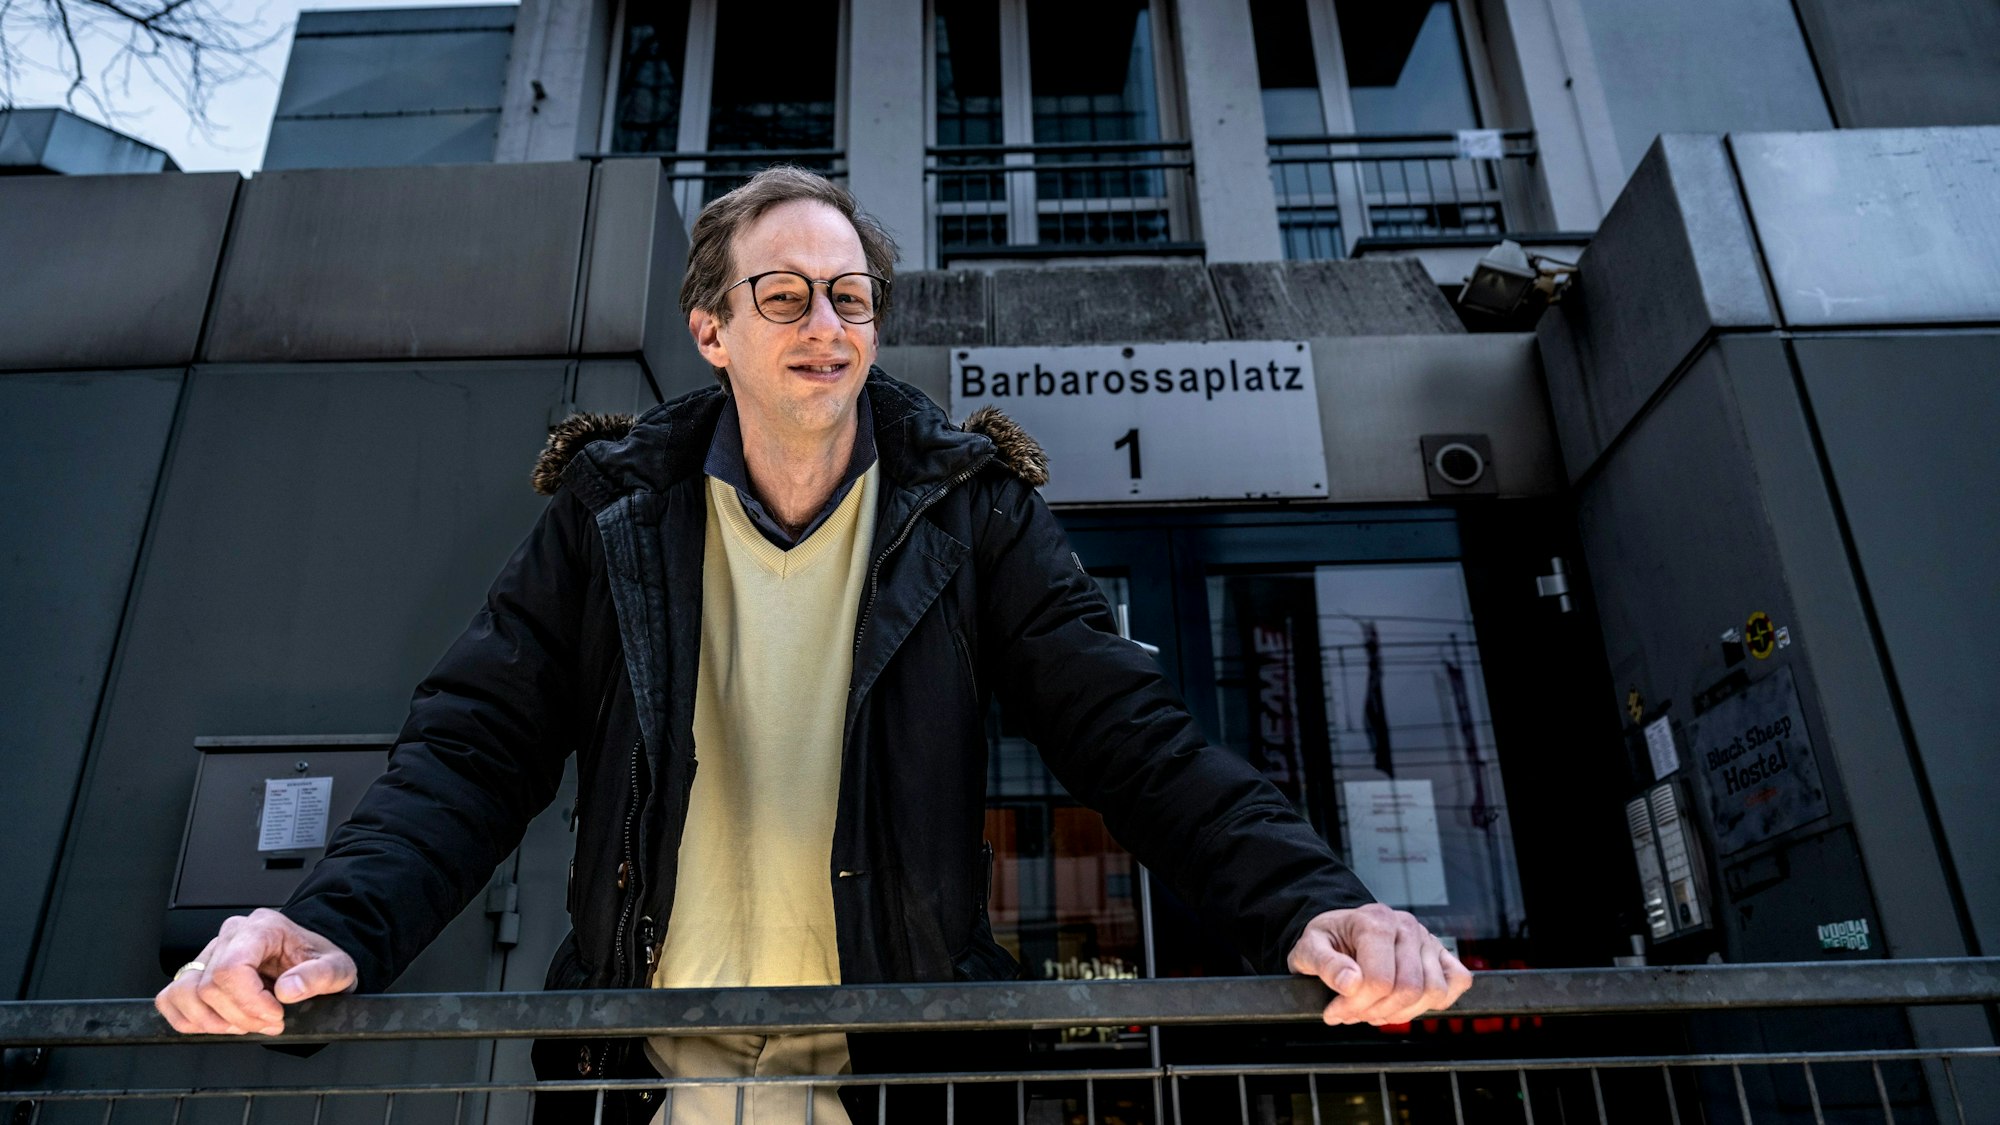 Regisseur Malte Wirtz stützt sich vor dem Haus am Barbarossaplatz 1 auf einen Zaun.